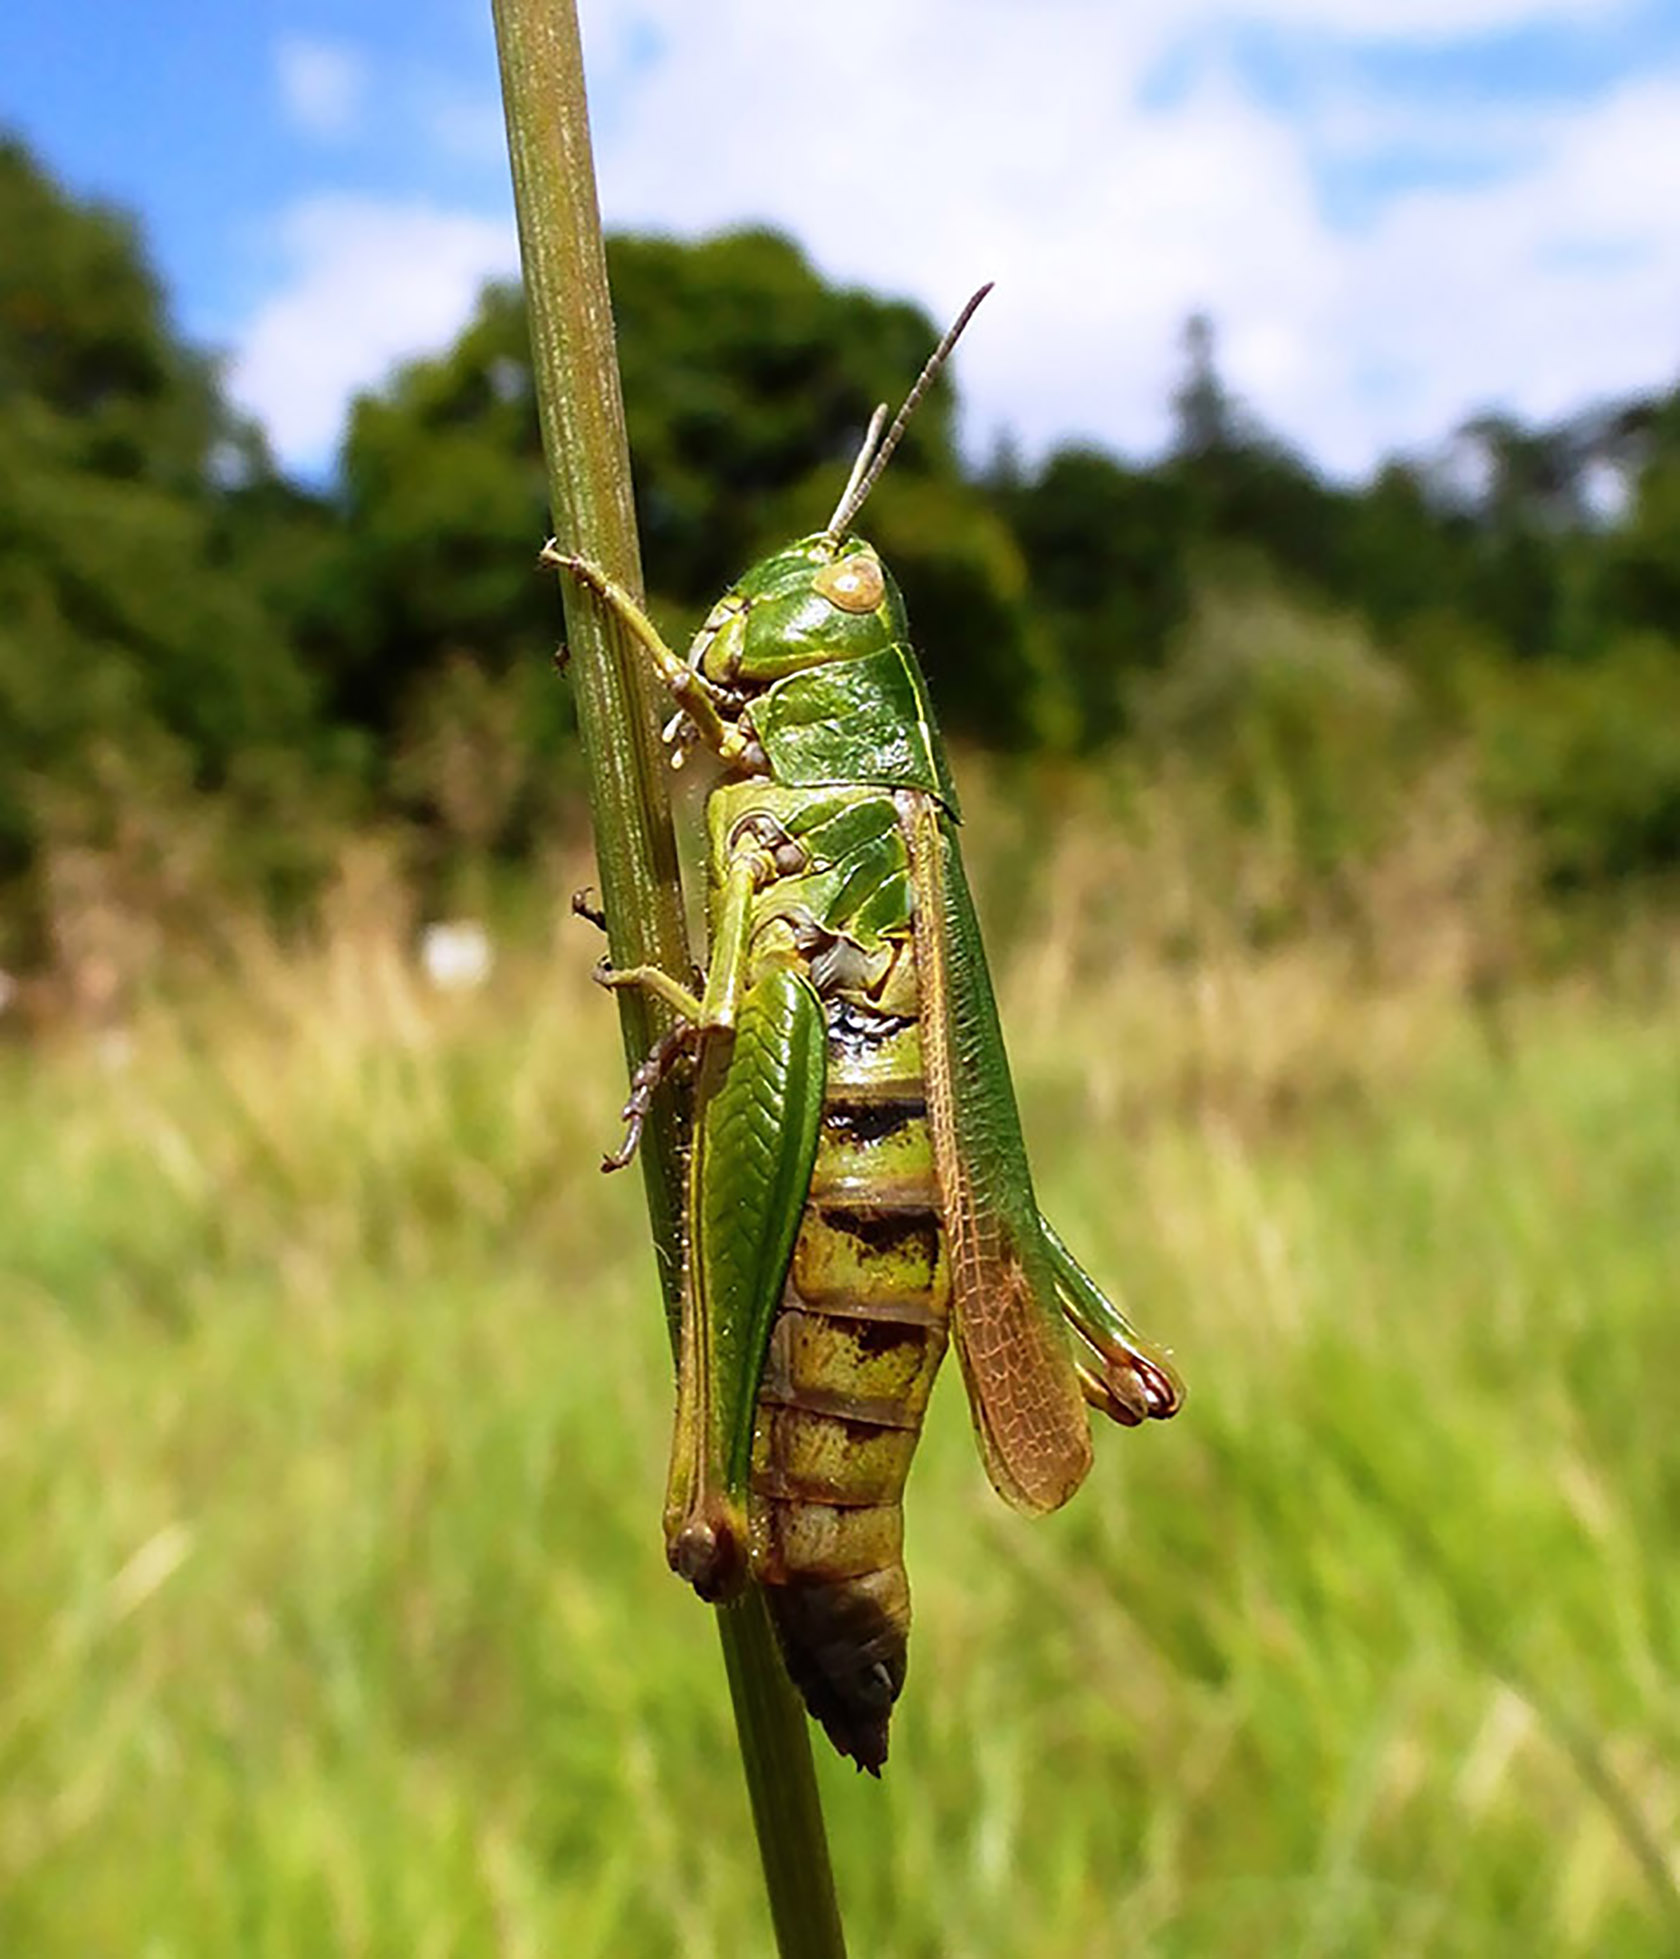 Grasshopper by Tammy Andrews